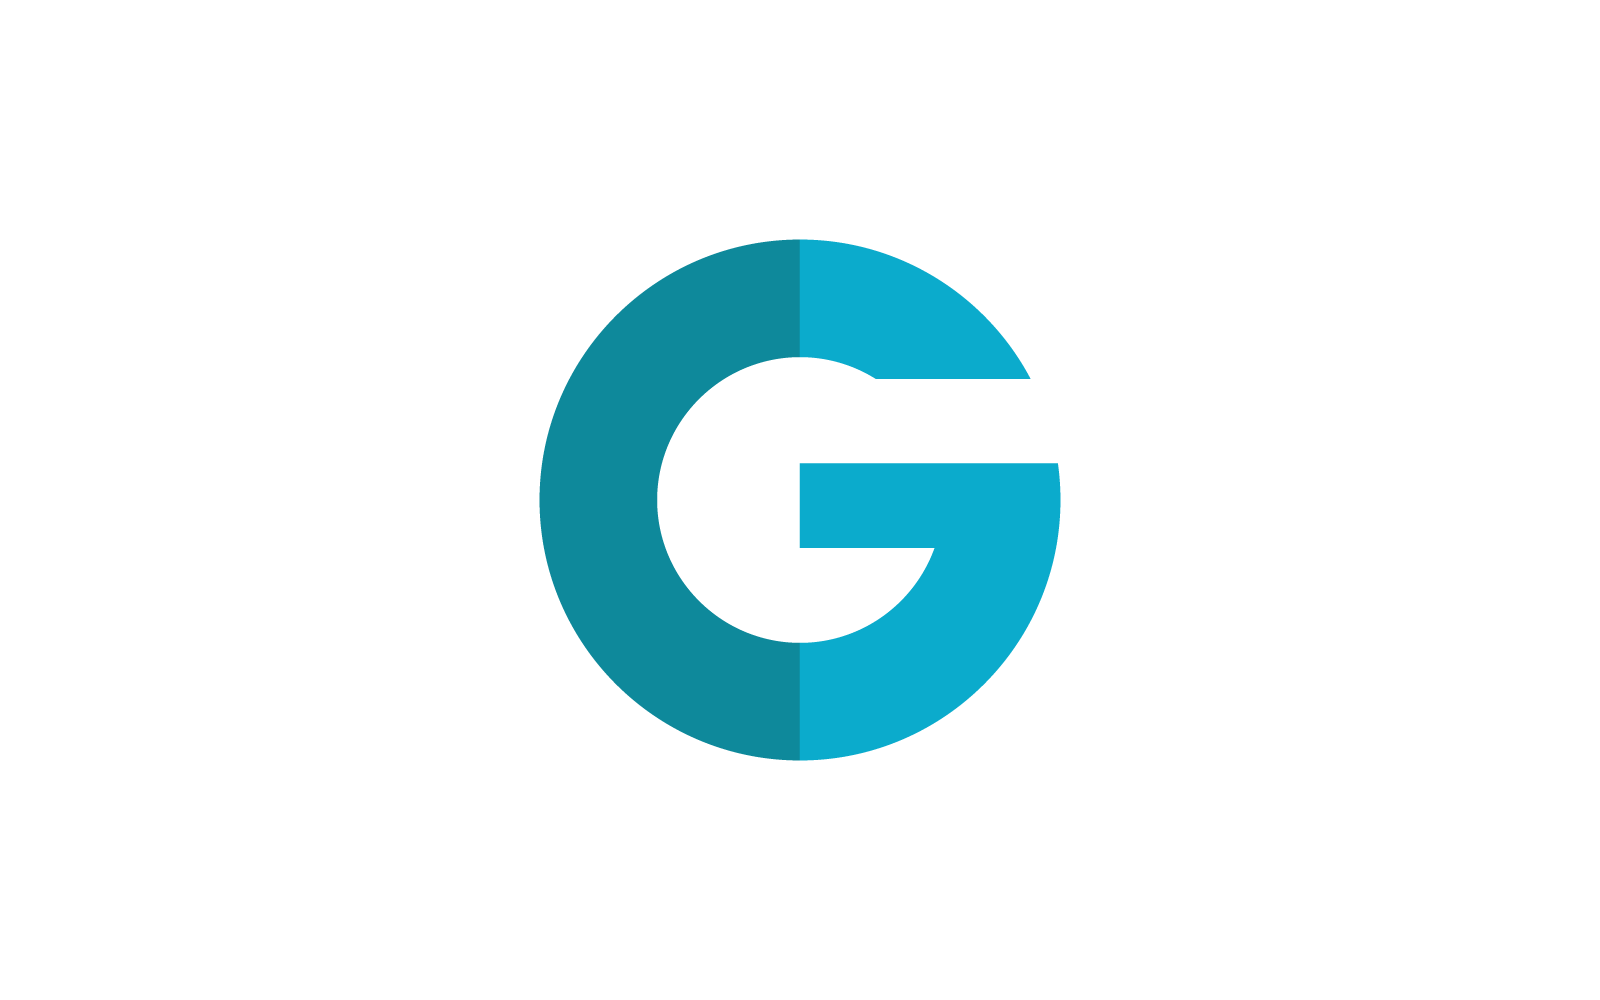 G písmeno logo vektorové šablony